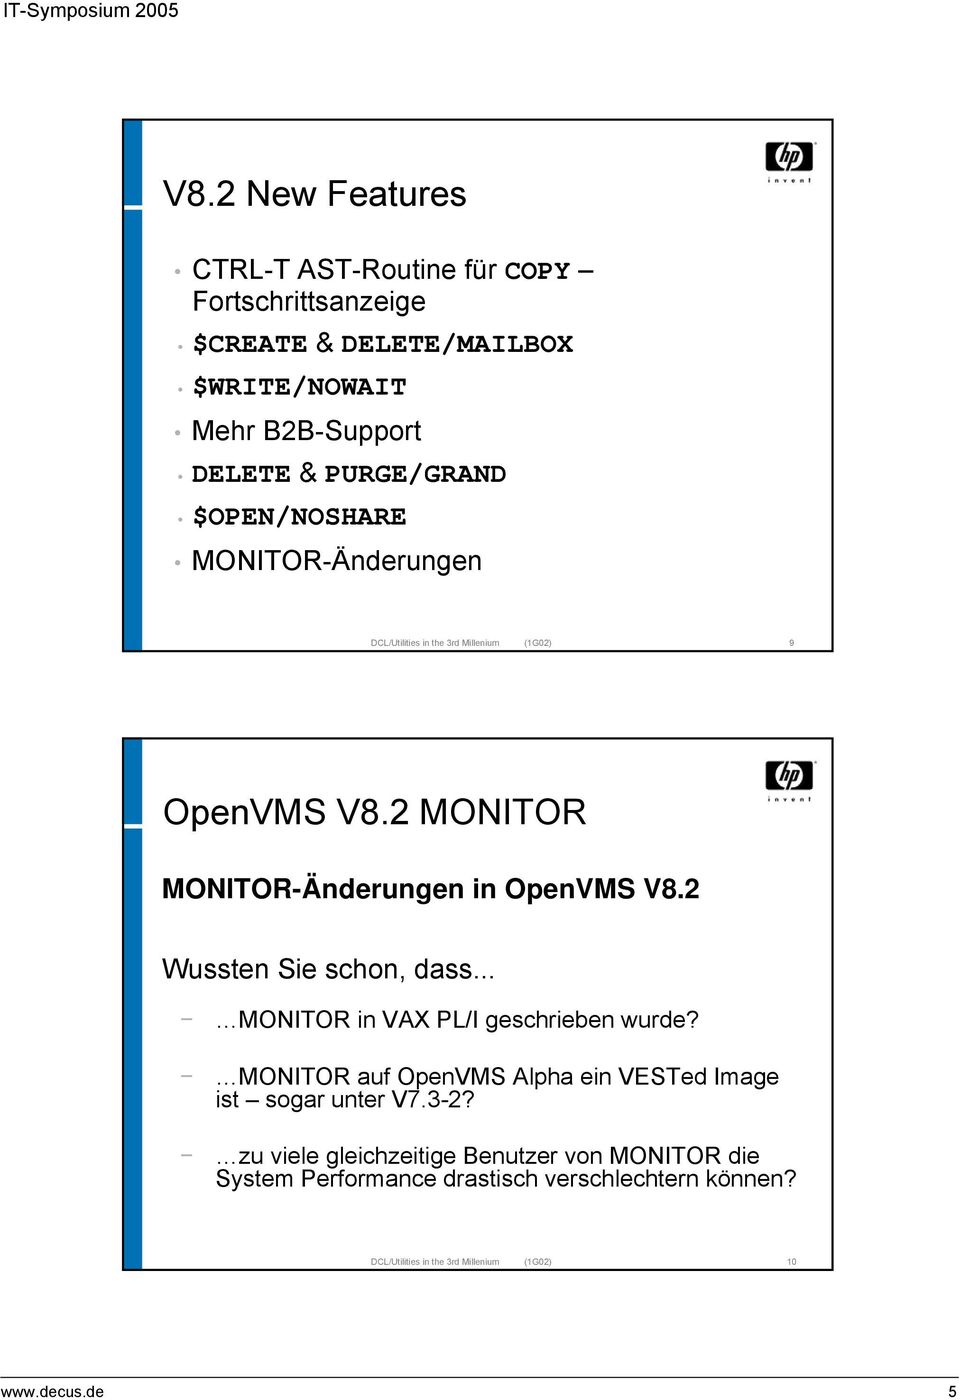 2 MONITOR MONITOR-Änderungen in OpenVMS V8.2 Wussten Sie schon, dass... MONITOR in VAX PL/I geschrieben wurde?